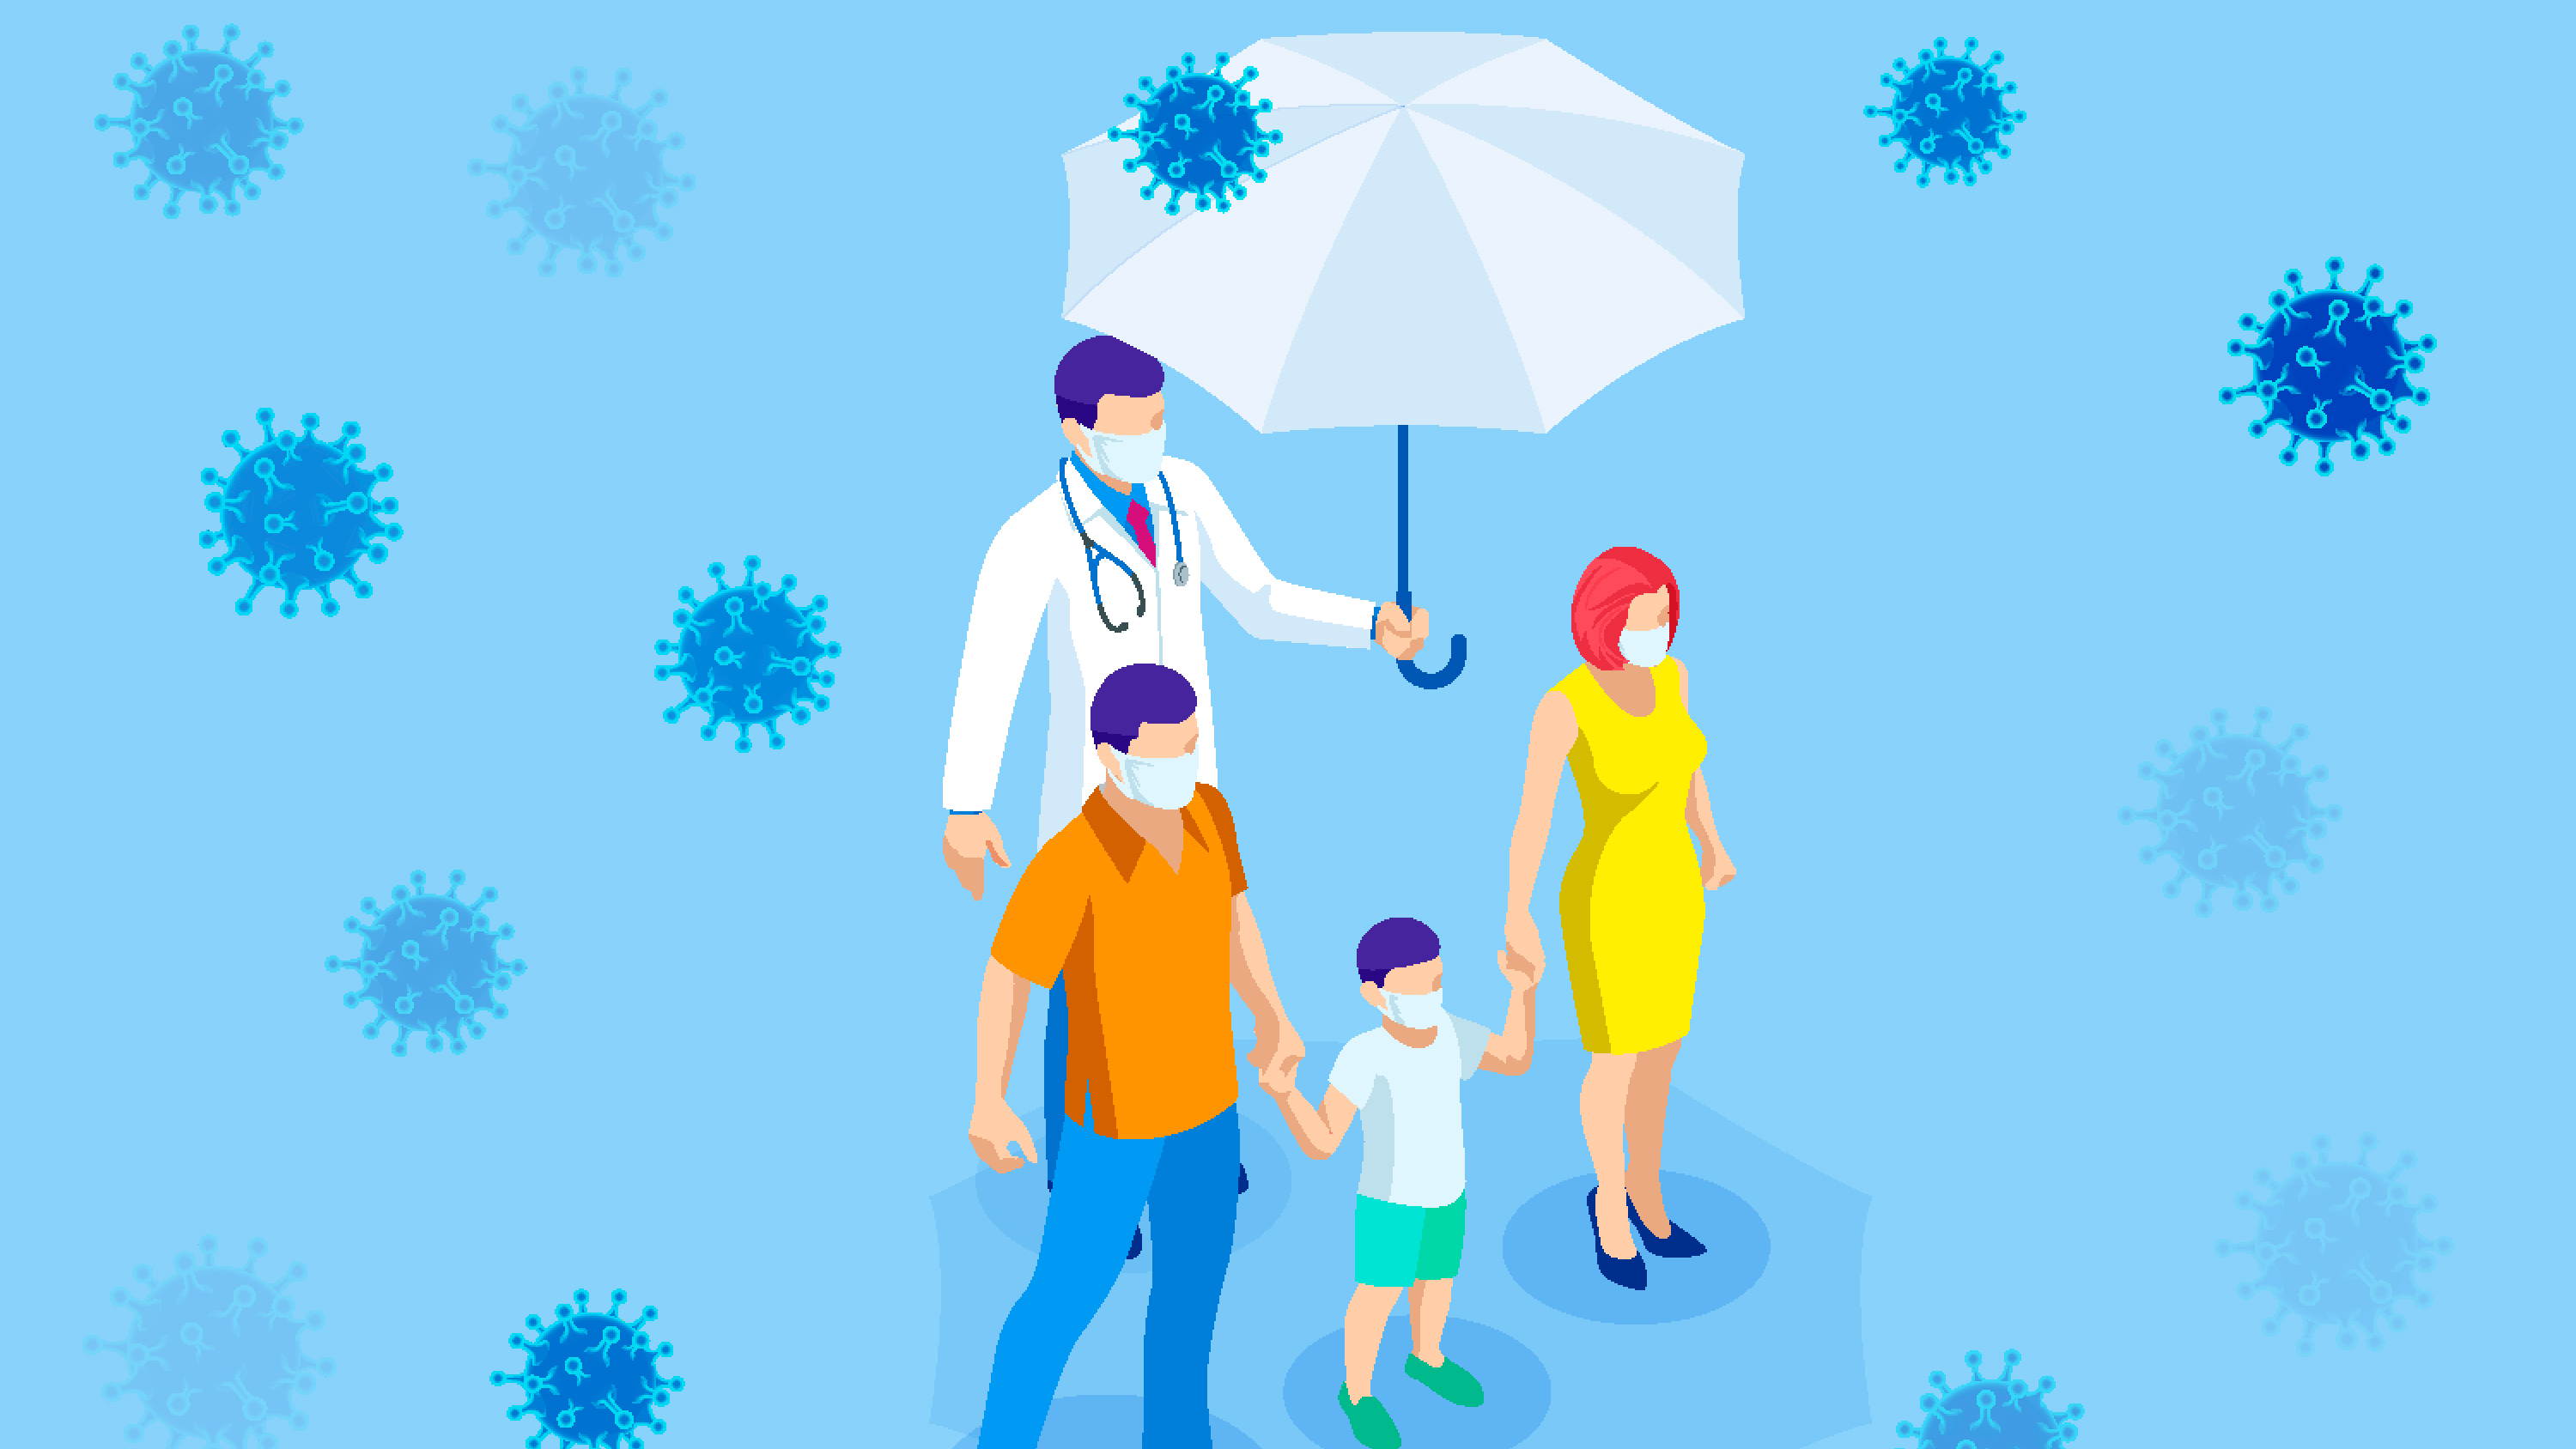 Existe evidencia que sugiere que las personas logran inmunidad ante coronavirus, pero aún no se ha podido determinar cuán robusta es o cuánto durará (Shutterstock)